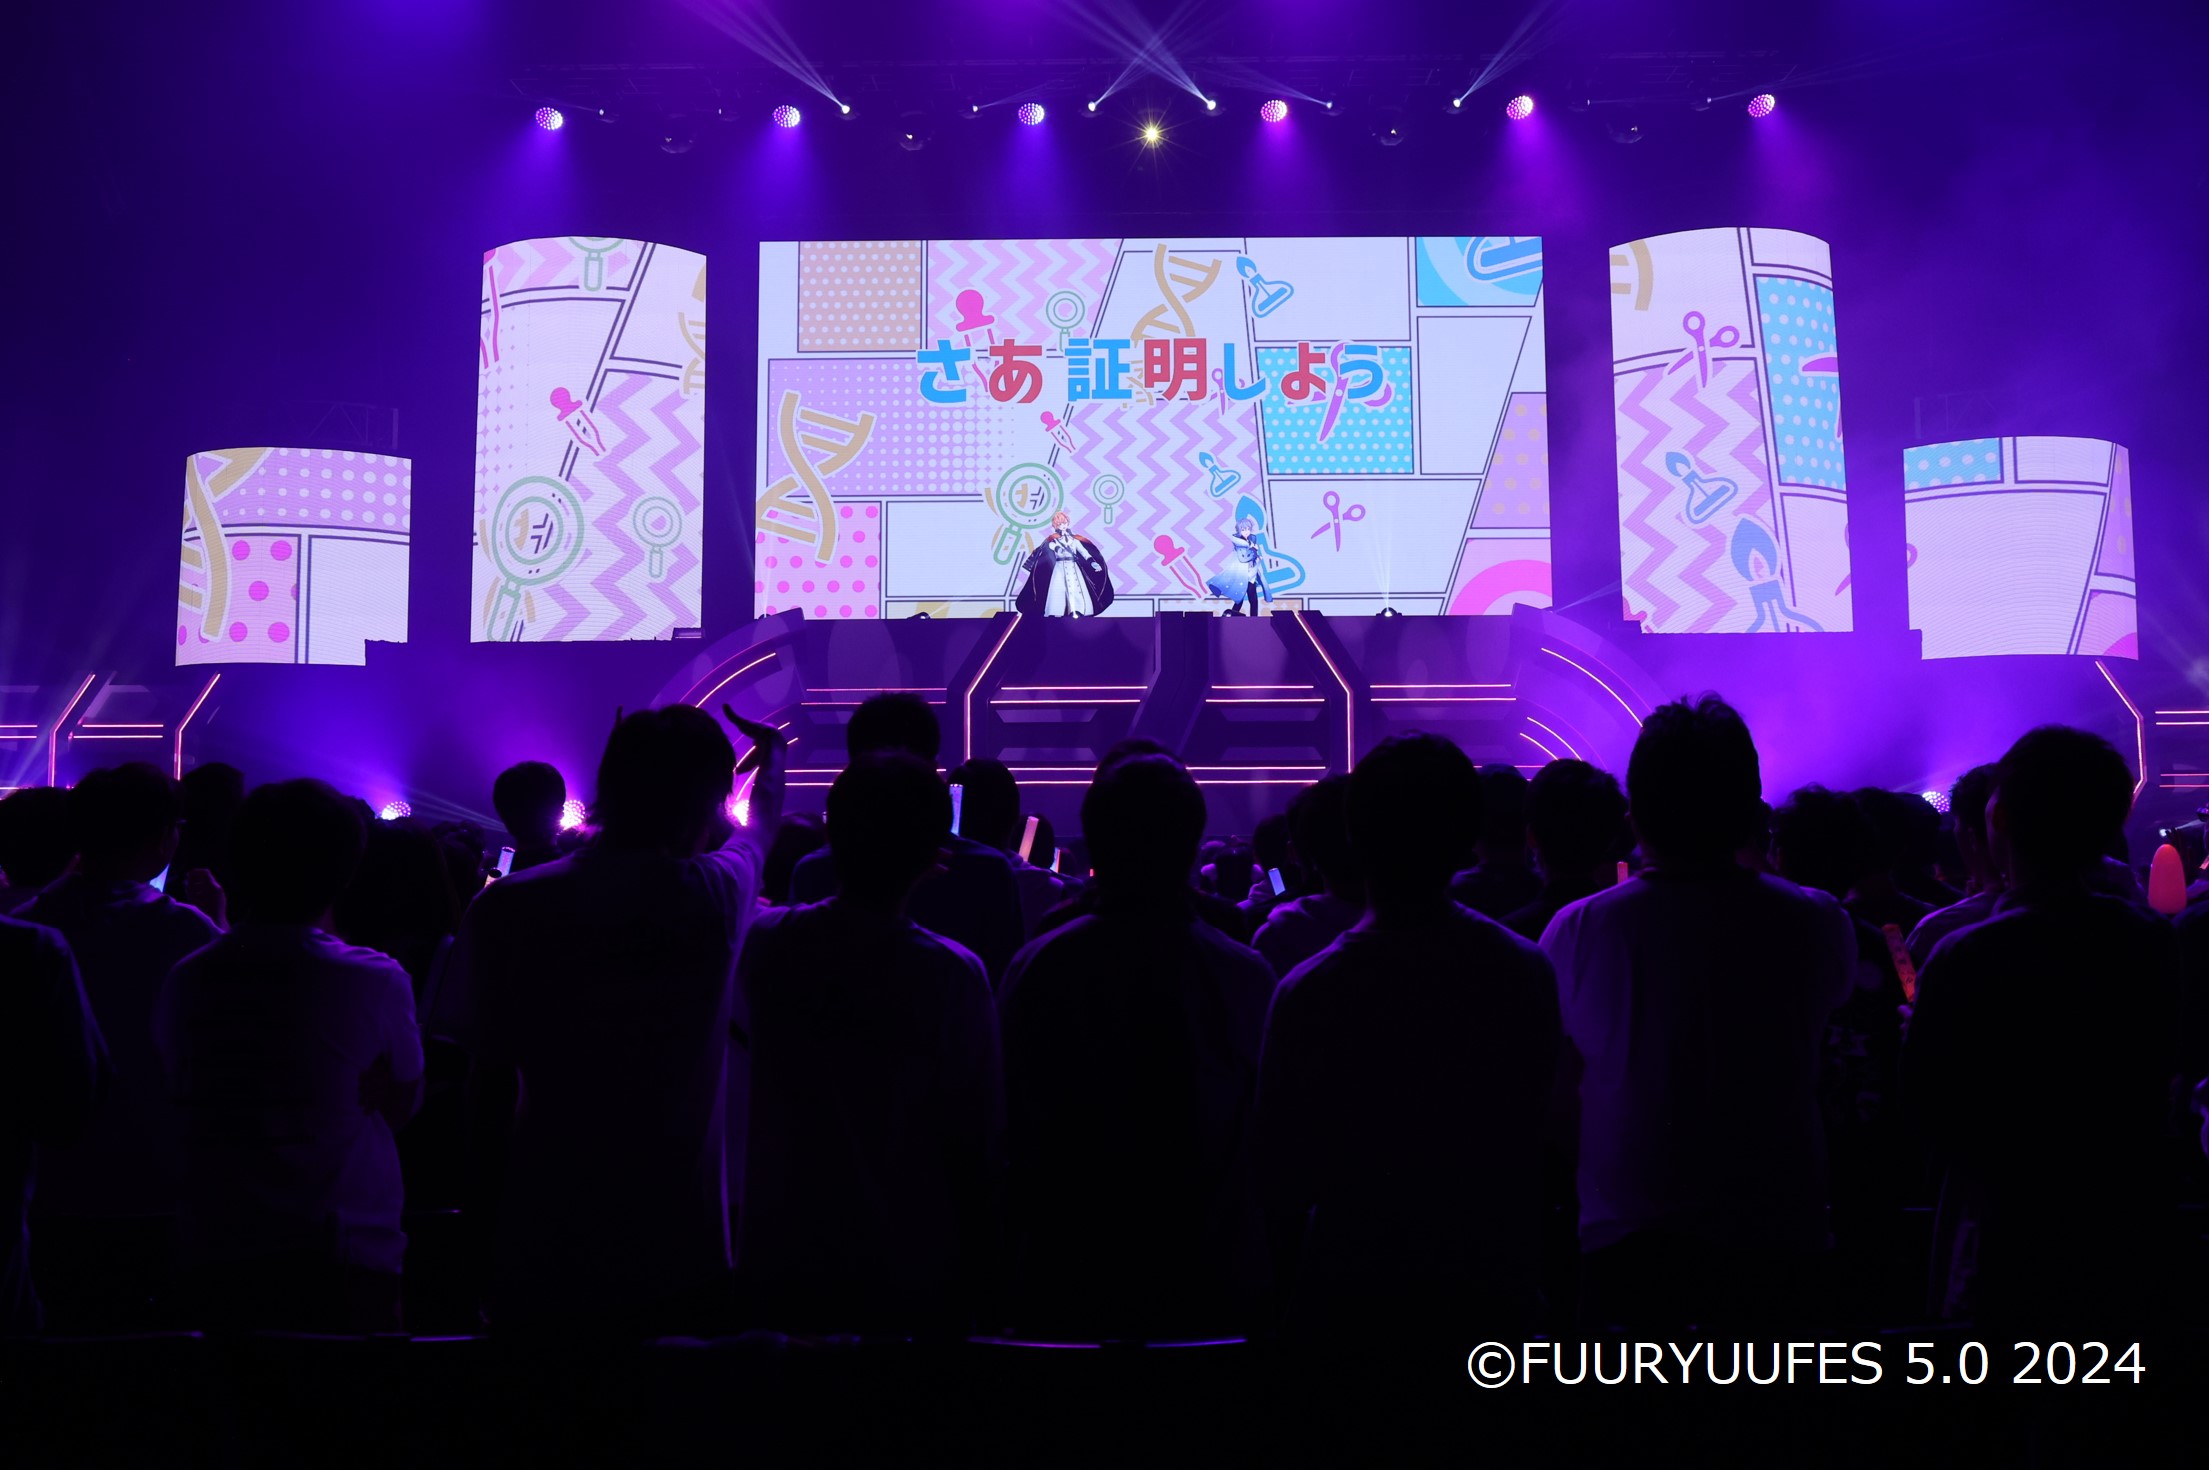 《イベントレポート》リアルとバーチャルが融合する次世代型アイドルイベント「FUURYUUFES 5.0 2024」を開催　豪華バーチャルアーティスト11組が出演したイベントが大盛況のまま閉幕のサブ画像15